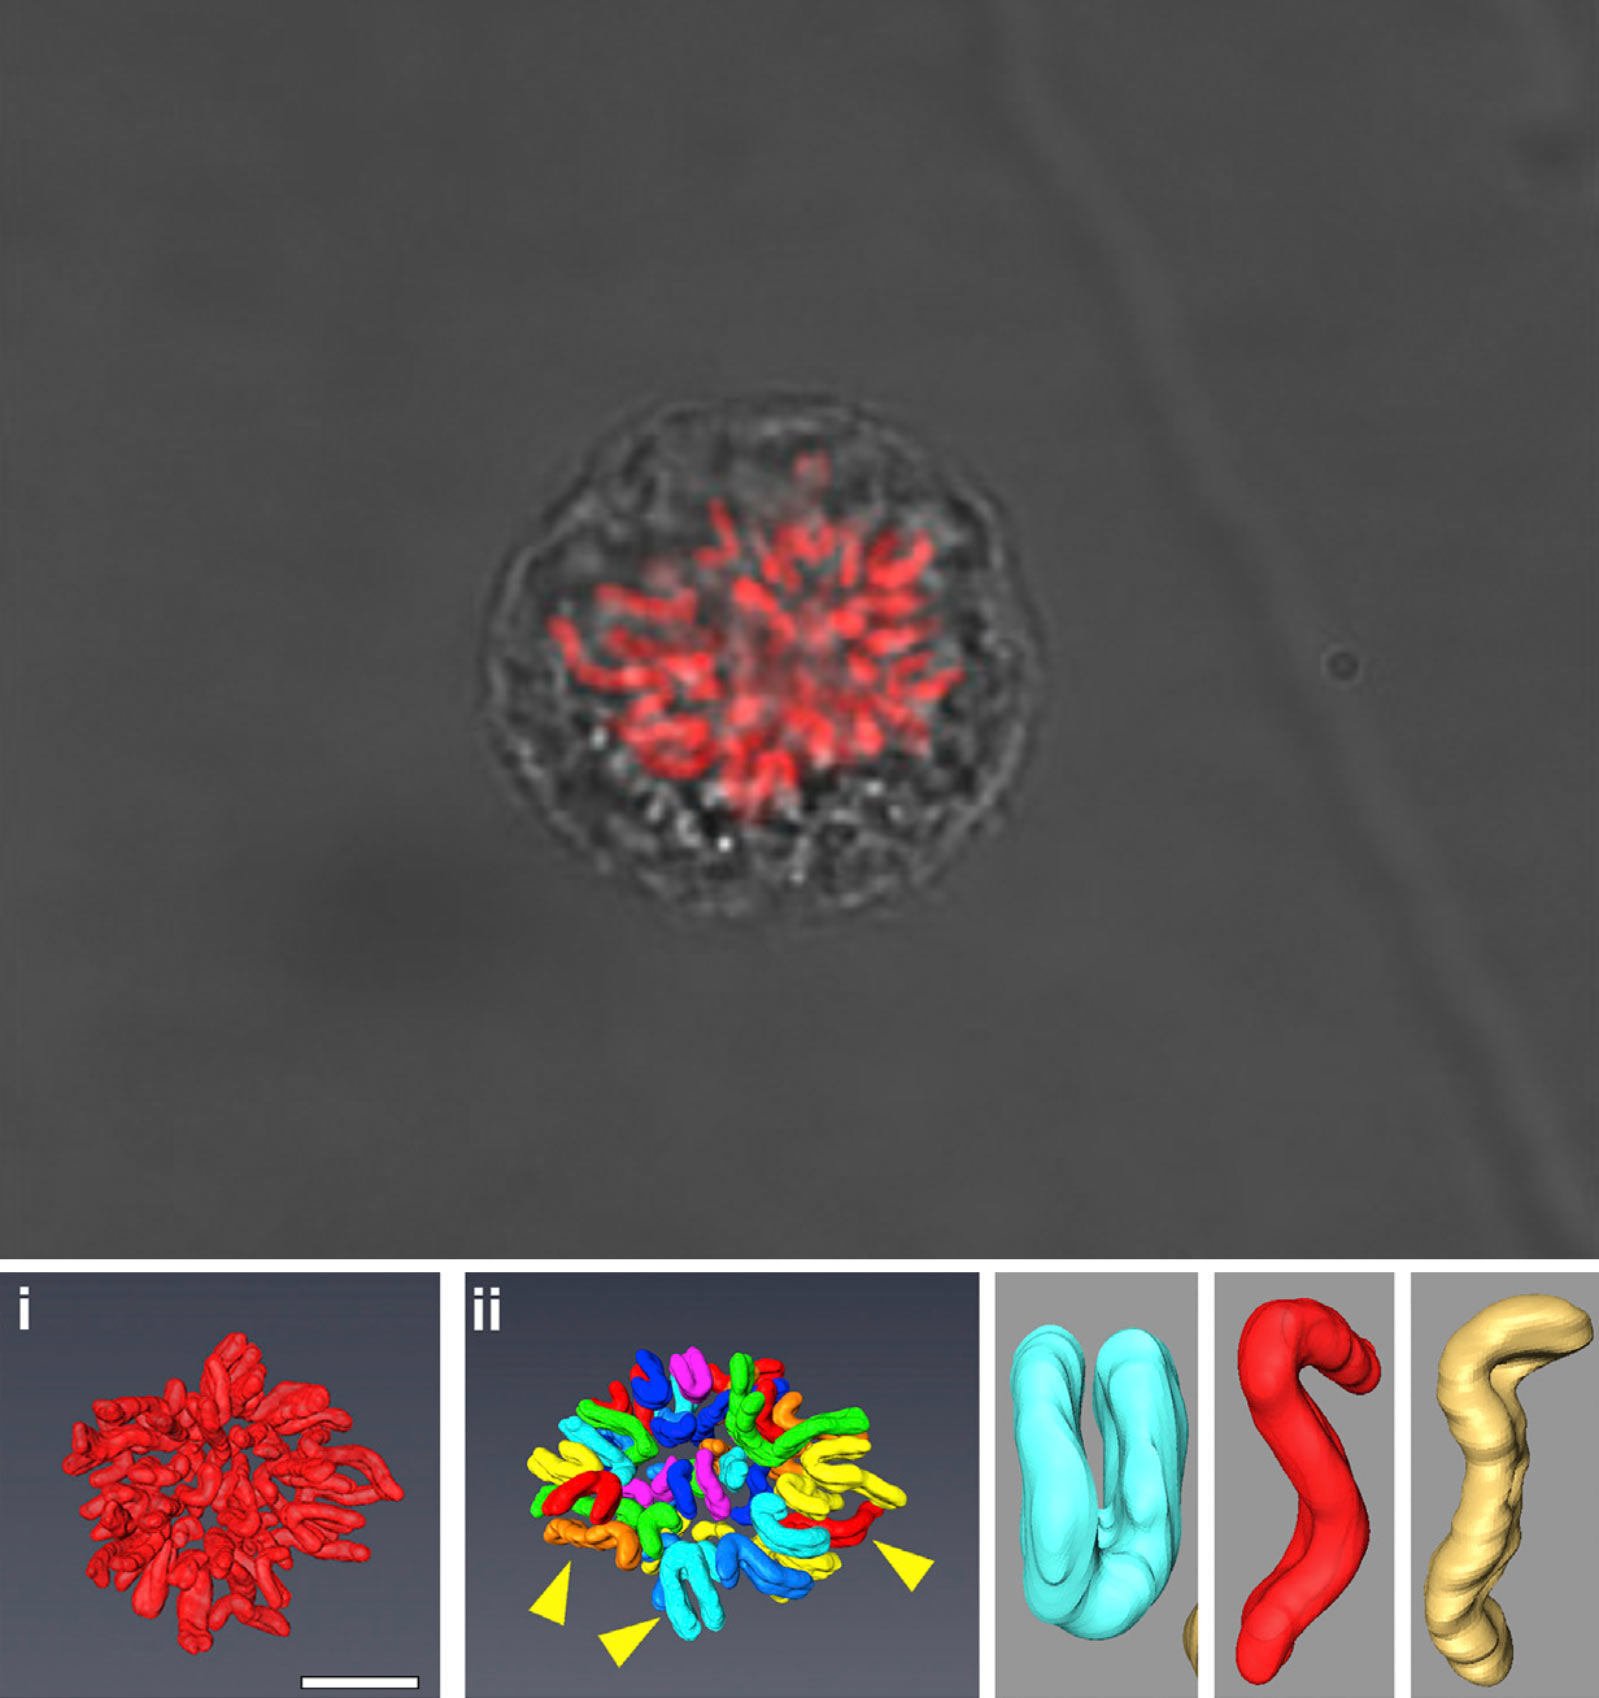 بالا: سلولی متعلق به بافت پوششی رنگی شبکیه (Retinal Pigment Epithelium). پایین: تصویر i محتوای کامل کروموزومی و تصویر ii همان محتوا را به صورت سگمنتال نشان می‌دهد. کروموزوم‌هایی که در تصویر ii با فلش مشخص شده‌اند در سمت راست نیز بزرگنمایی شده‌اند که شامل کروموزوم متاسنتریک (فیروزه‌ای) و دو کروموزوم ساب‌متاسنتریک (قرمز/نارنجی) می‌باشد. منبع: Sci-News